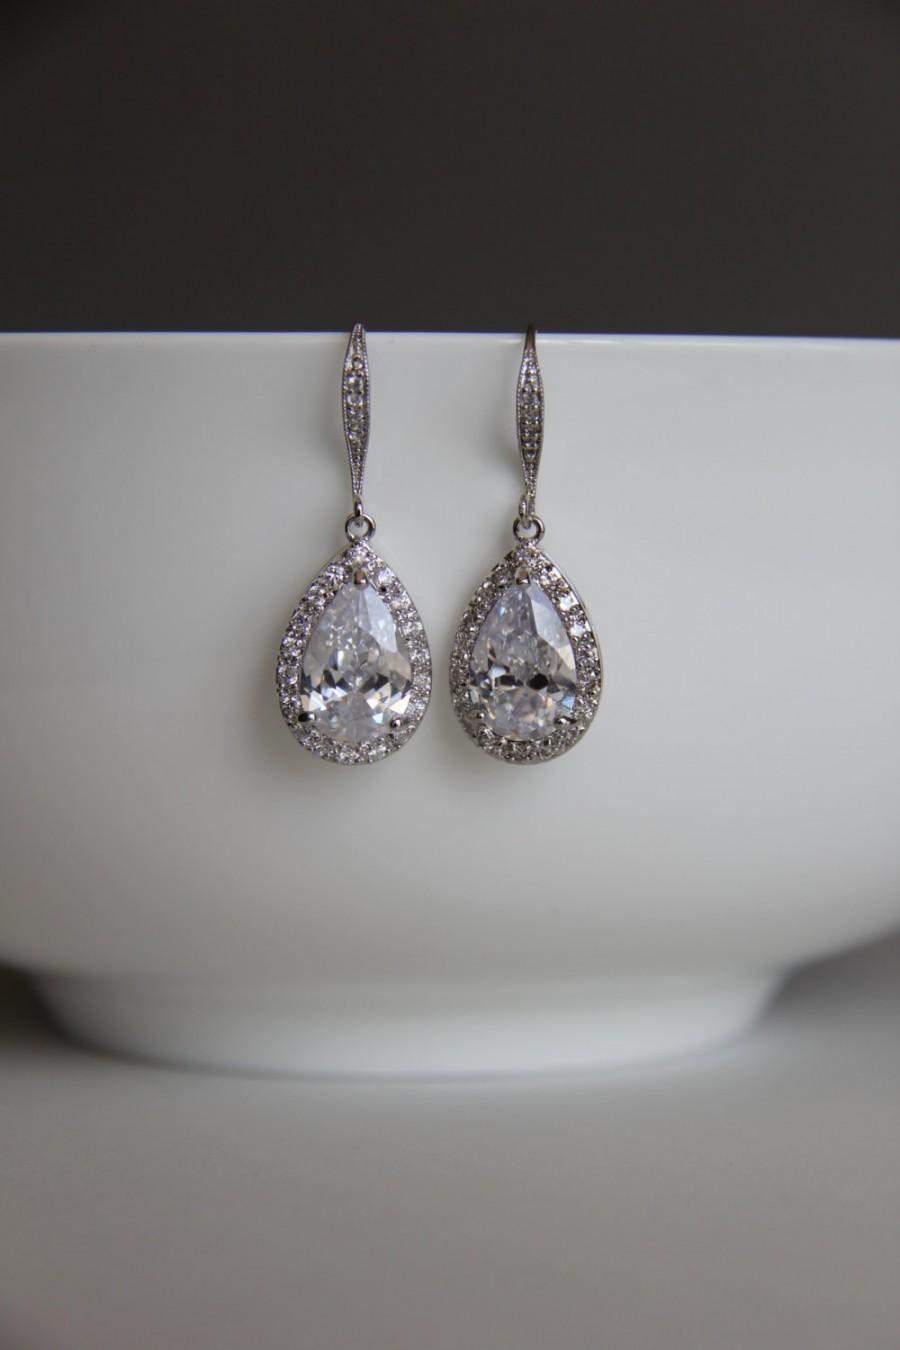 Свадьба - Bridal earrings, cz earrings, wedding earrings, bridesmaid earrings, bridal jewelry, wedding jewelry, cz jewelry, dangley earrings